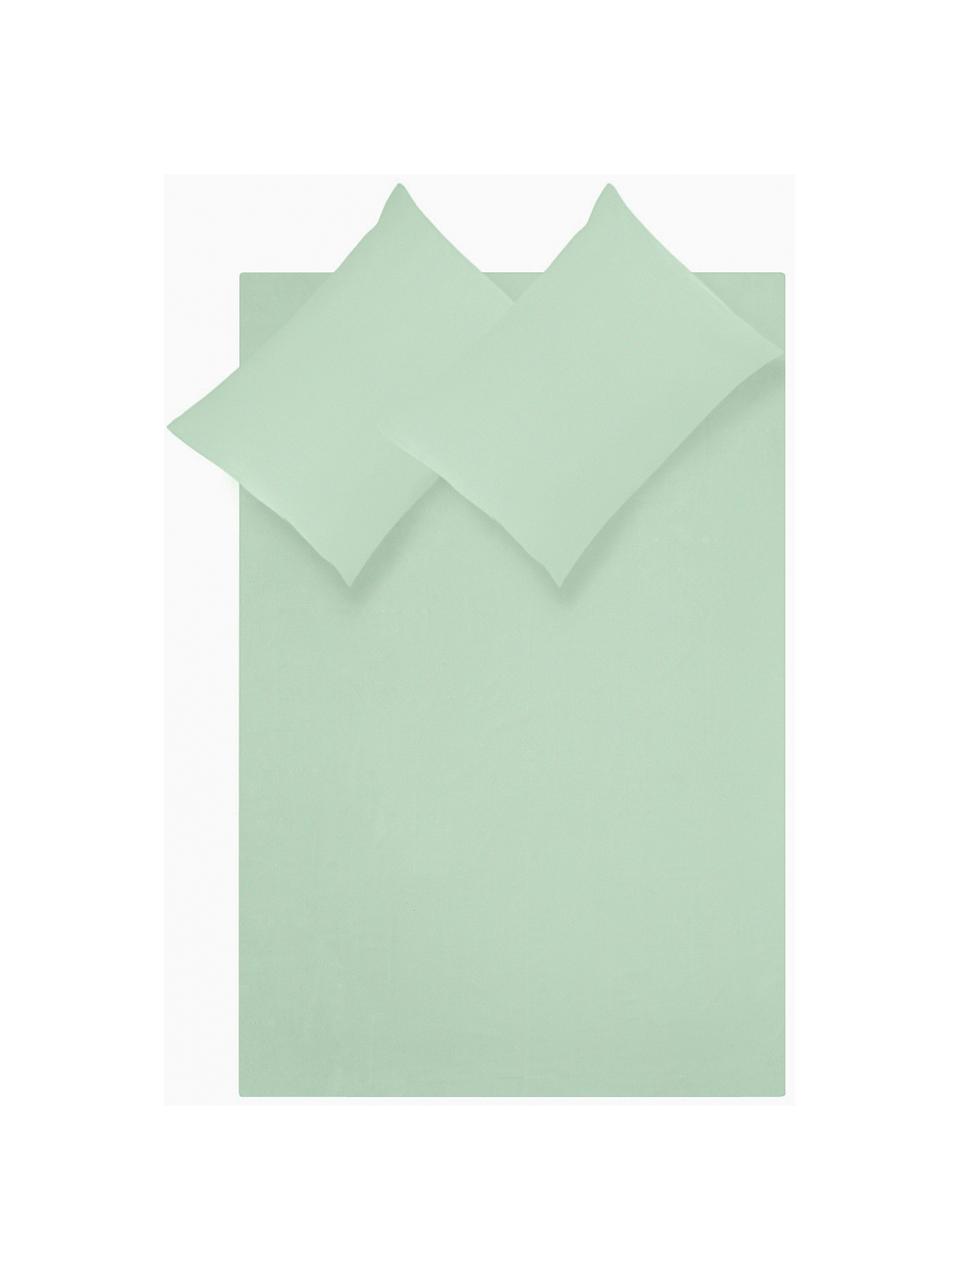 Biancheria da letto in raso di cotone verde salvia Comfort, Tessuto: raso Densità del filo 250, Verde salvia, 240 x 300 cm + 2 federe 50 x 80 cm